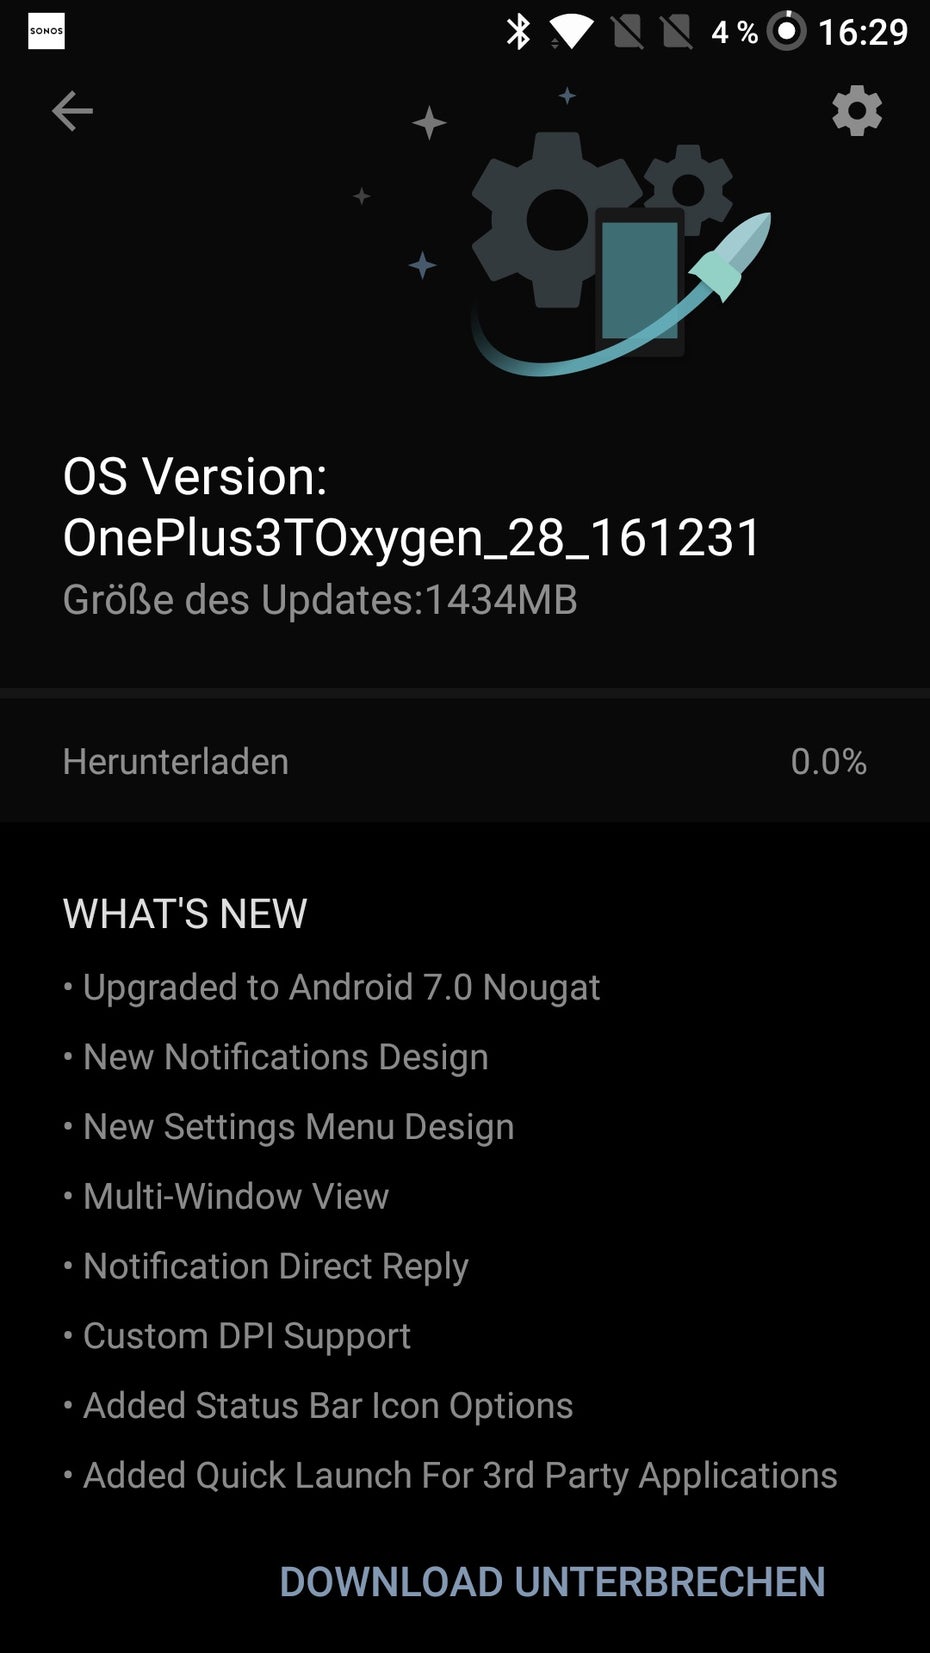 Oneplus hat das Nougat-Update für das Oneplus 3T am 31.12.2016 veröffentlicht. (Bild: t3n)